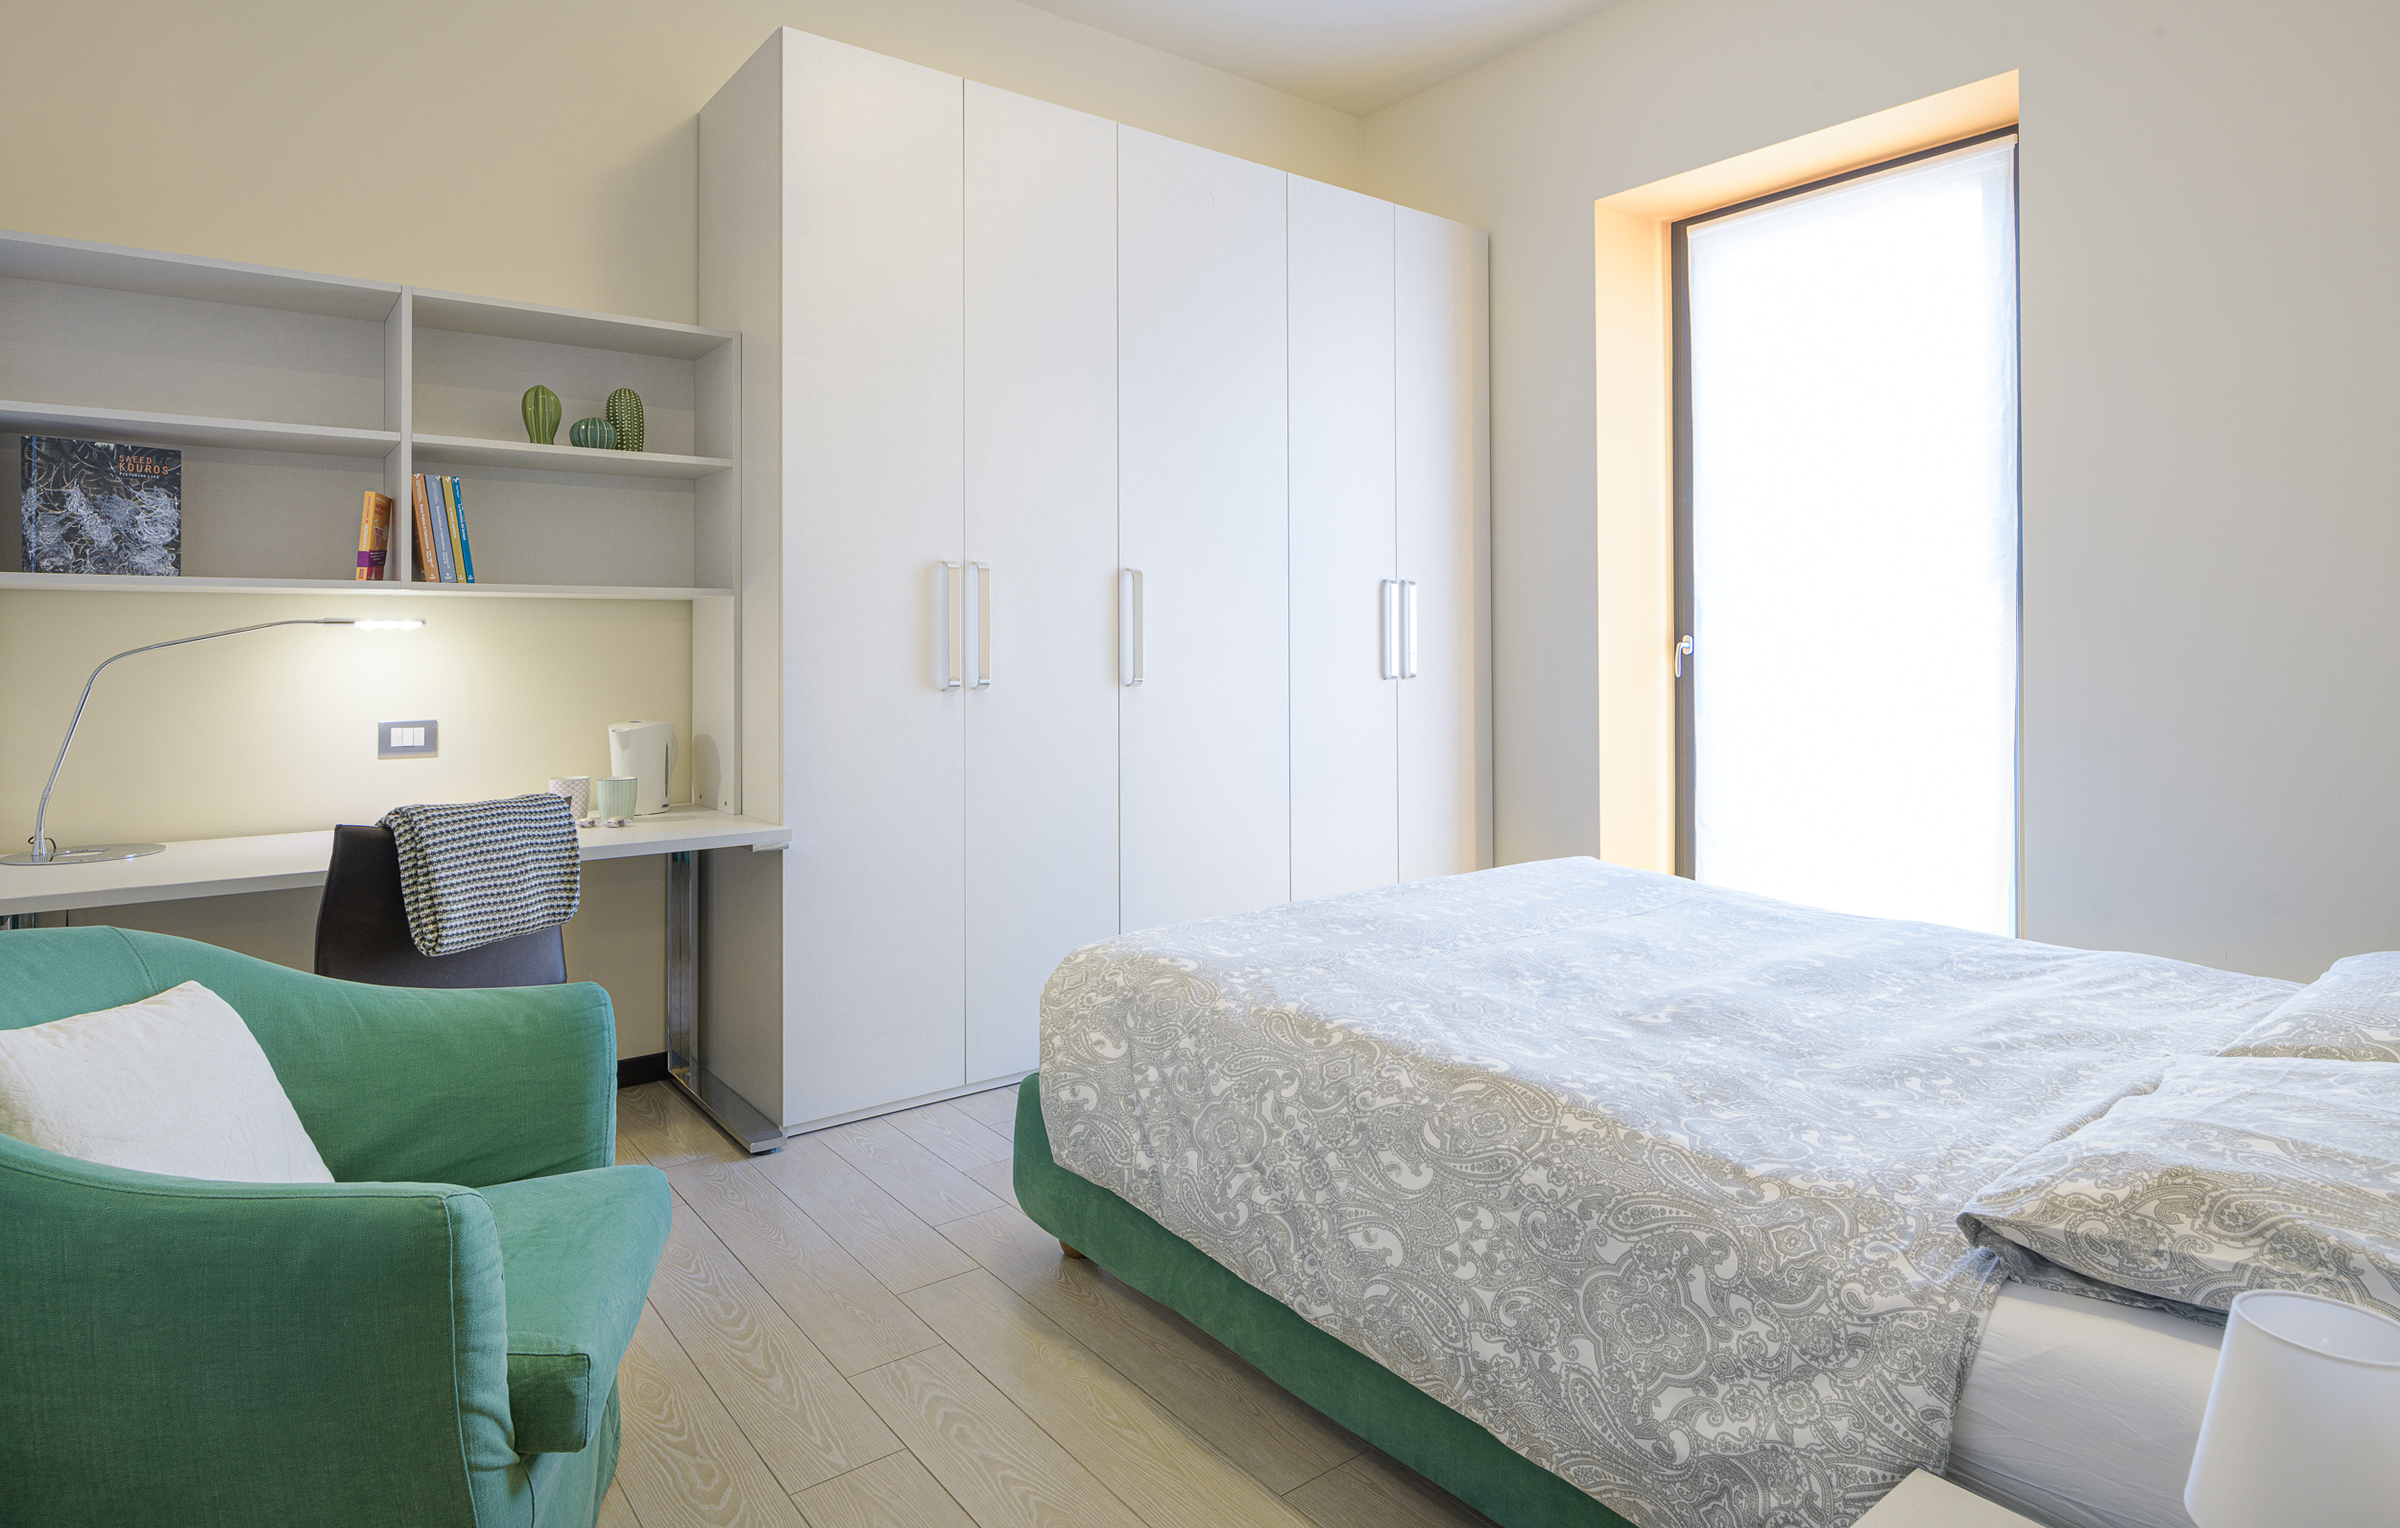 L'affitto dell'appartamento a Milano include la biancheria da letto e da bagno